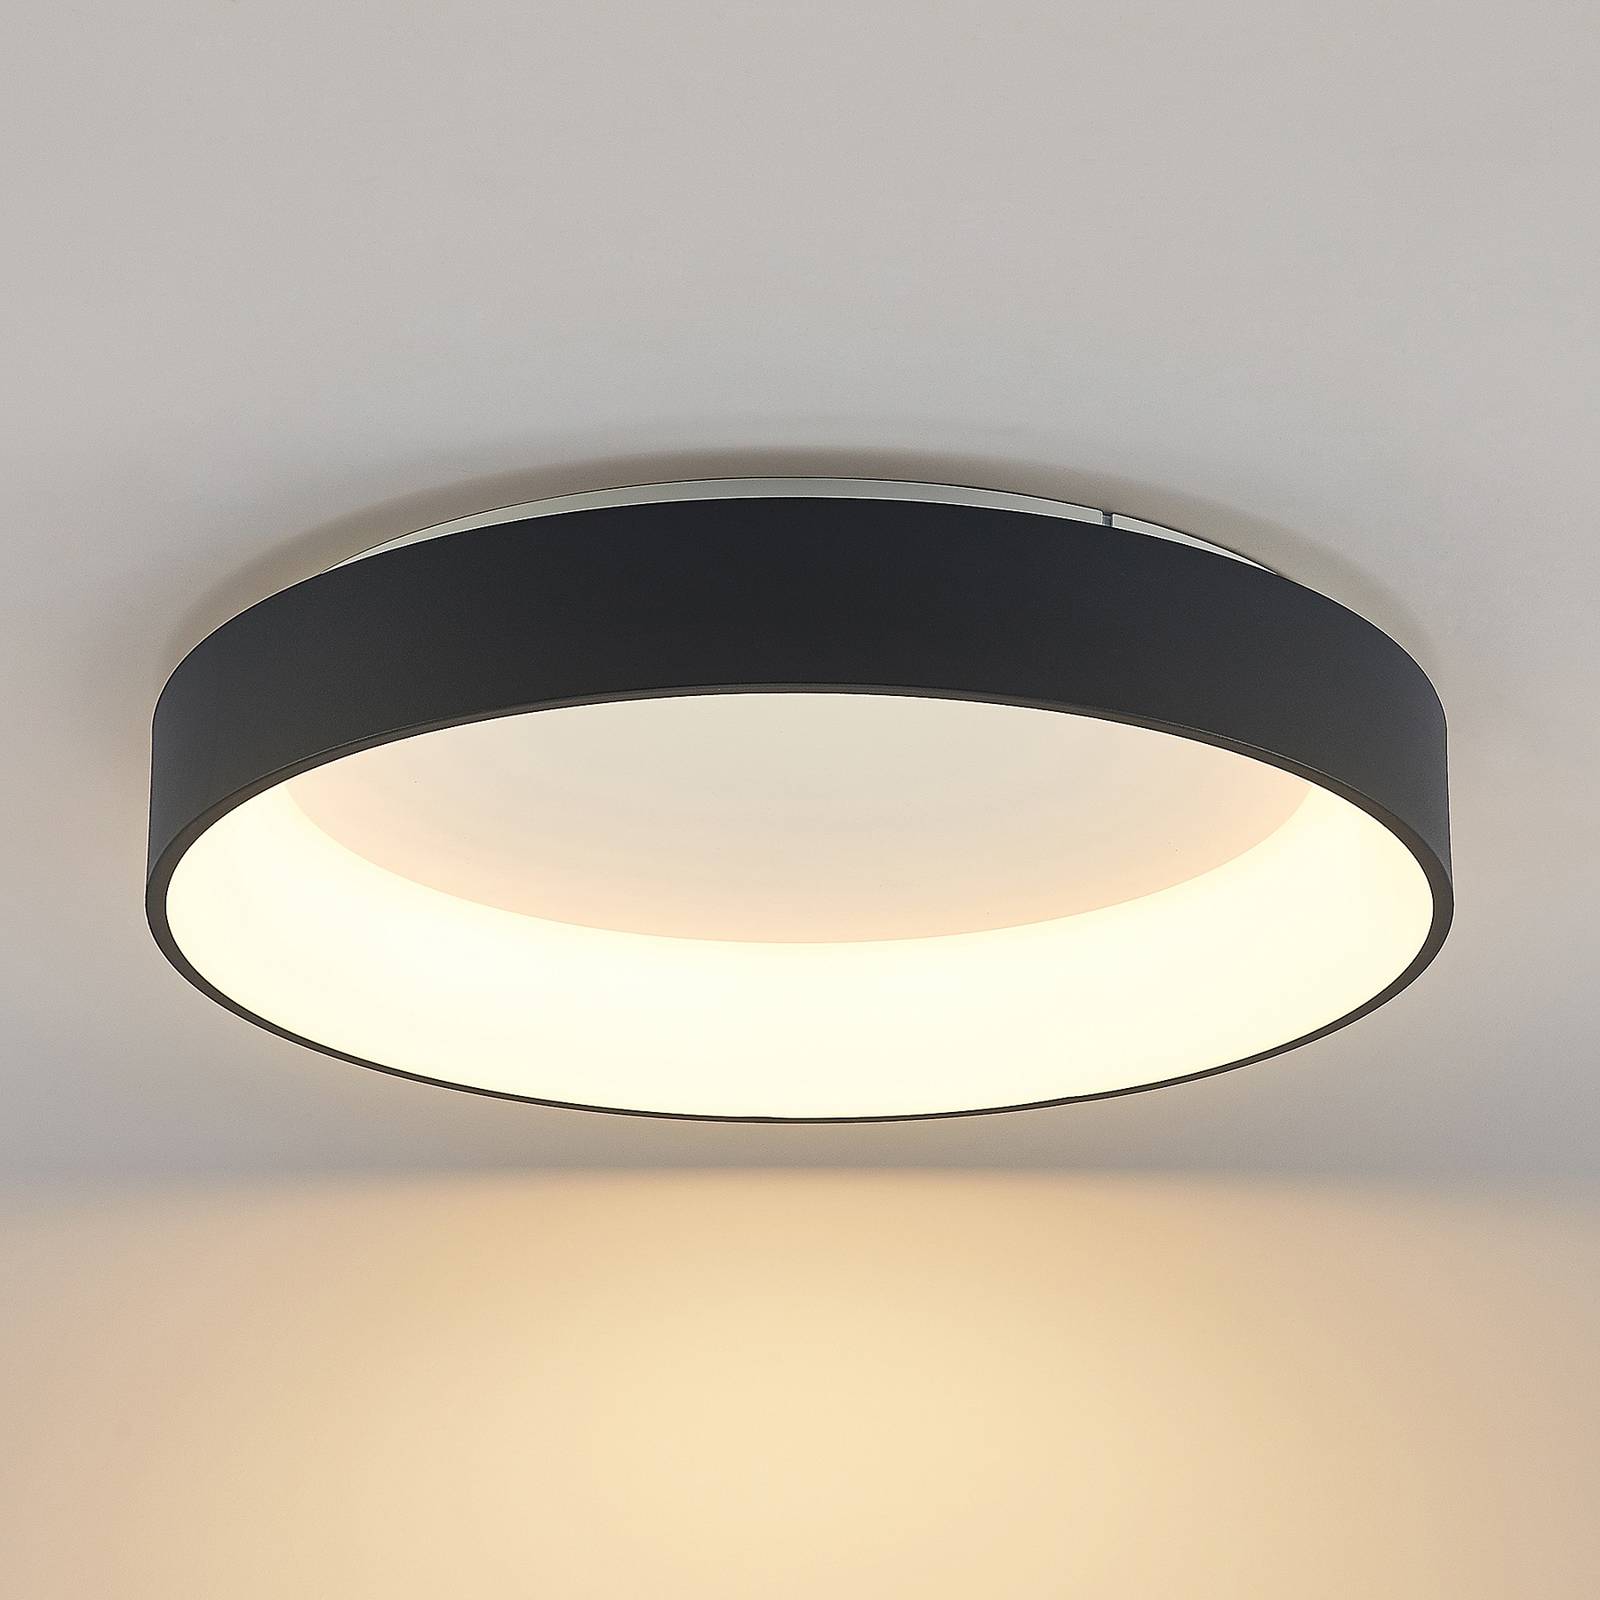 Arcchio Aleksi plafonnier LED, Ø 60 cm, rond